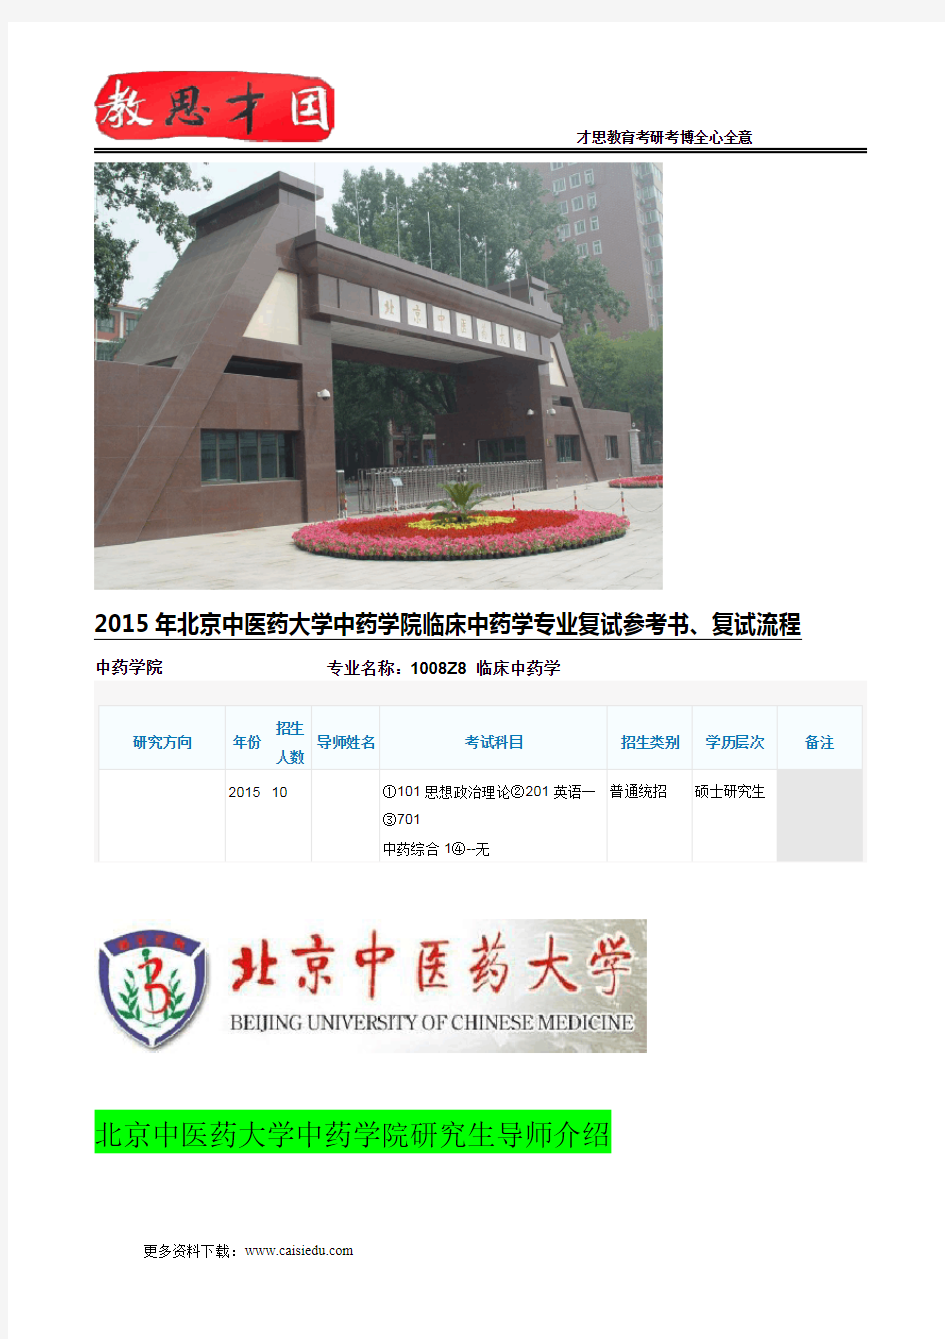 2015年北京中医药大学中药学院临床中药学专业复试参考书、复试流程